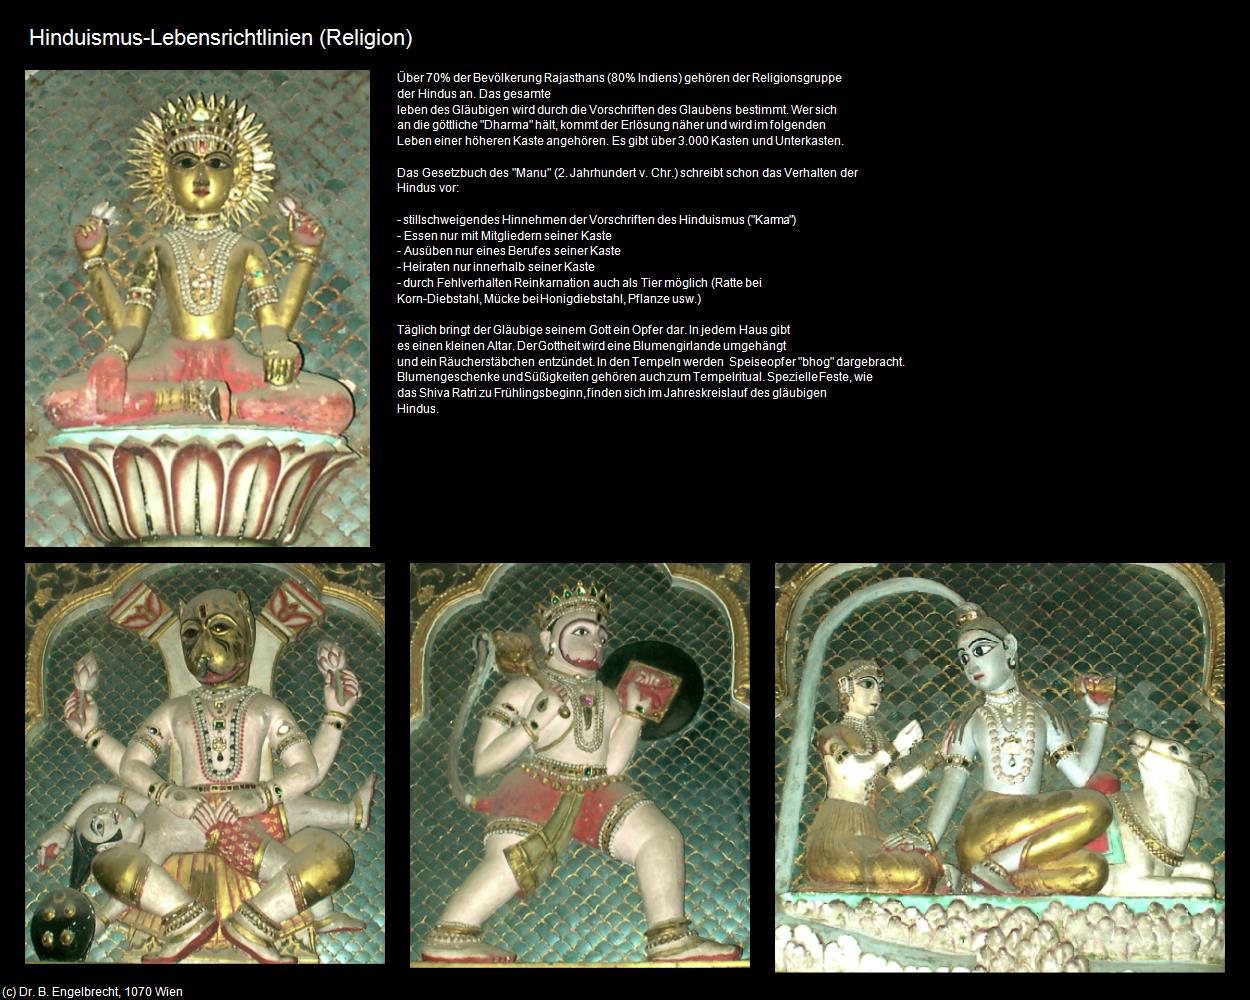 Hinduismus-Lebensrichtlinien (Indien-Religion) in Rajasthan - das Land der Könige